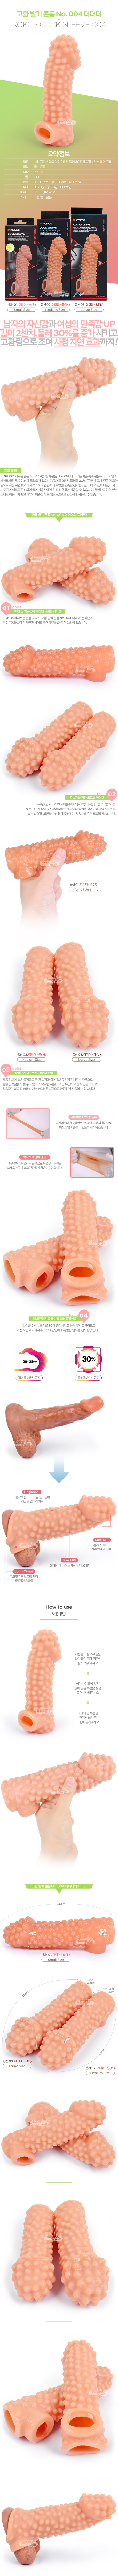 [사이즈 증대] 고환 발기 콘돔 No. 004 더더더(KOKOS Cock Sleeve 004) - 코코스(P00000IY) (KKS)